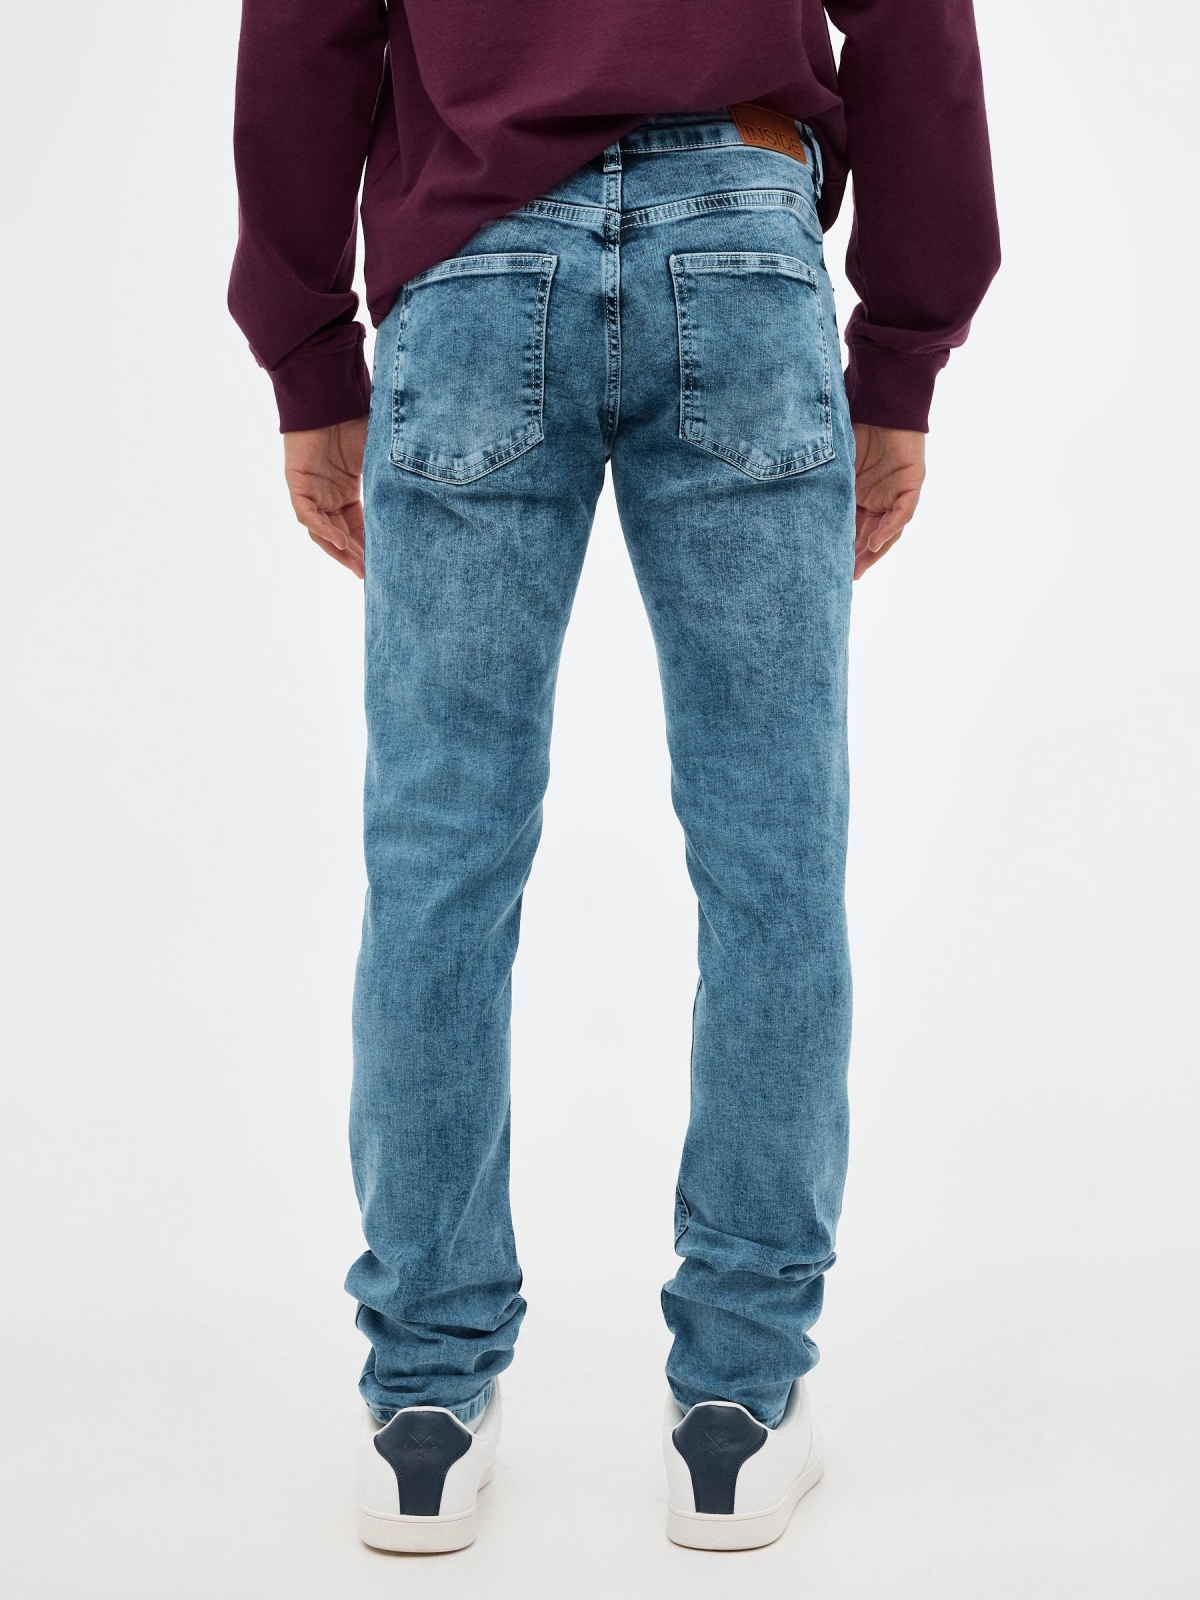 Jeans slim azul desgastados azul vista media trasera